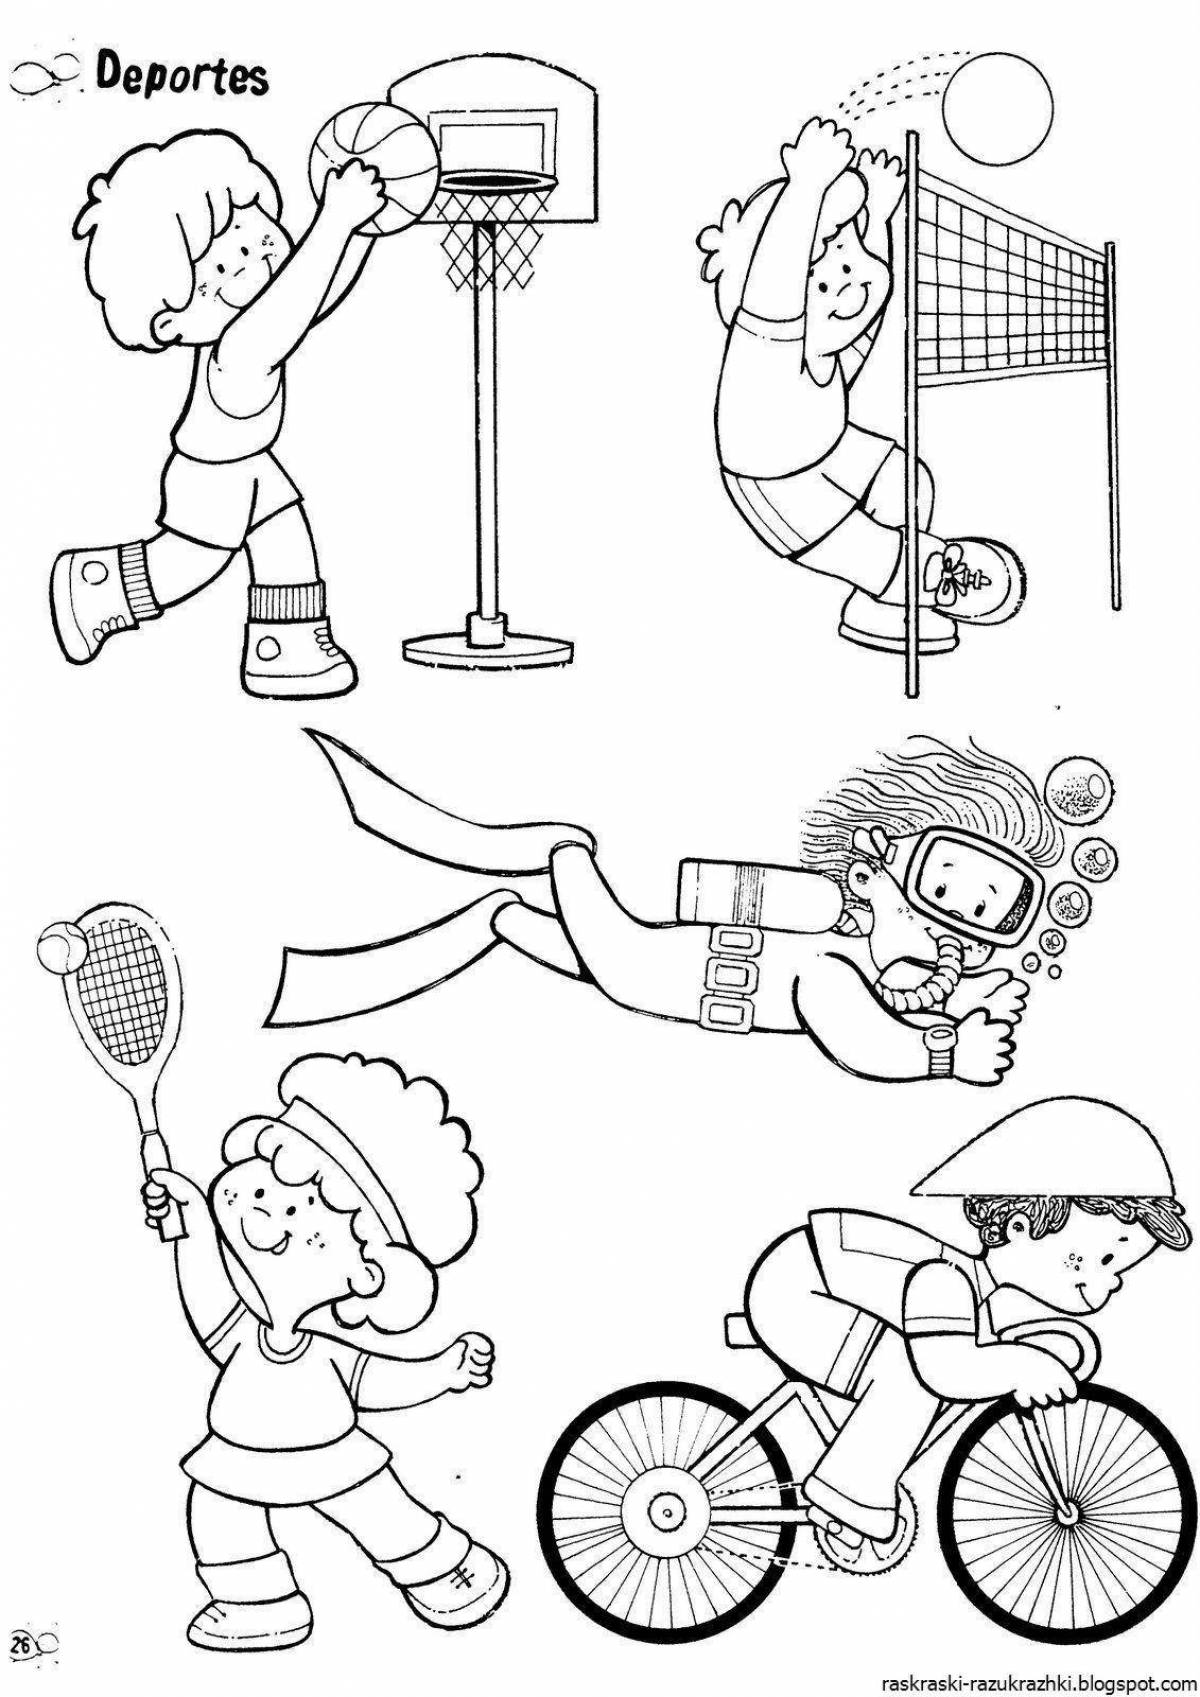 О спорте и здоровом образе жизни для детей #9